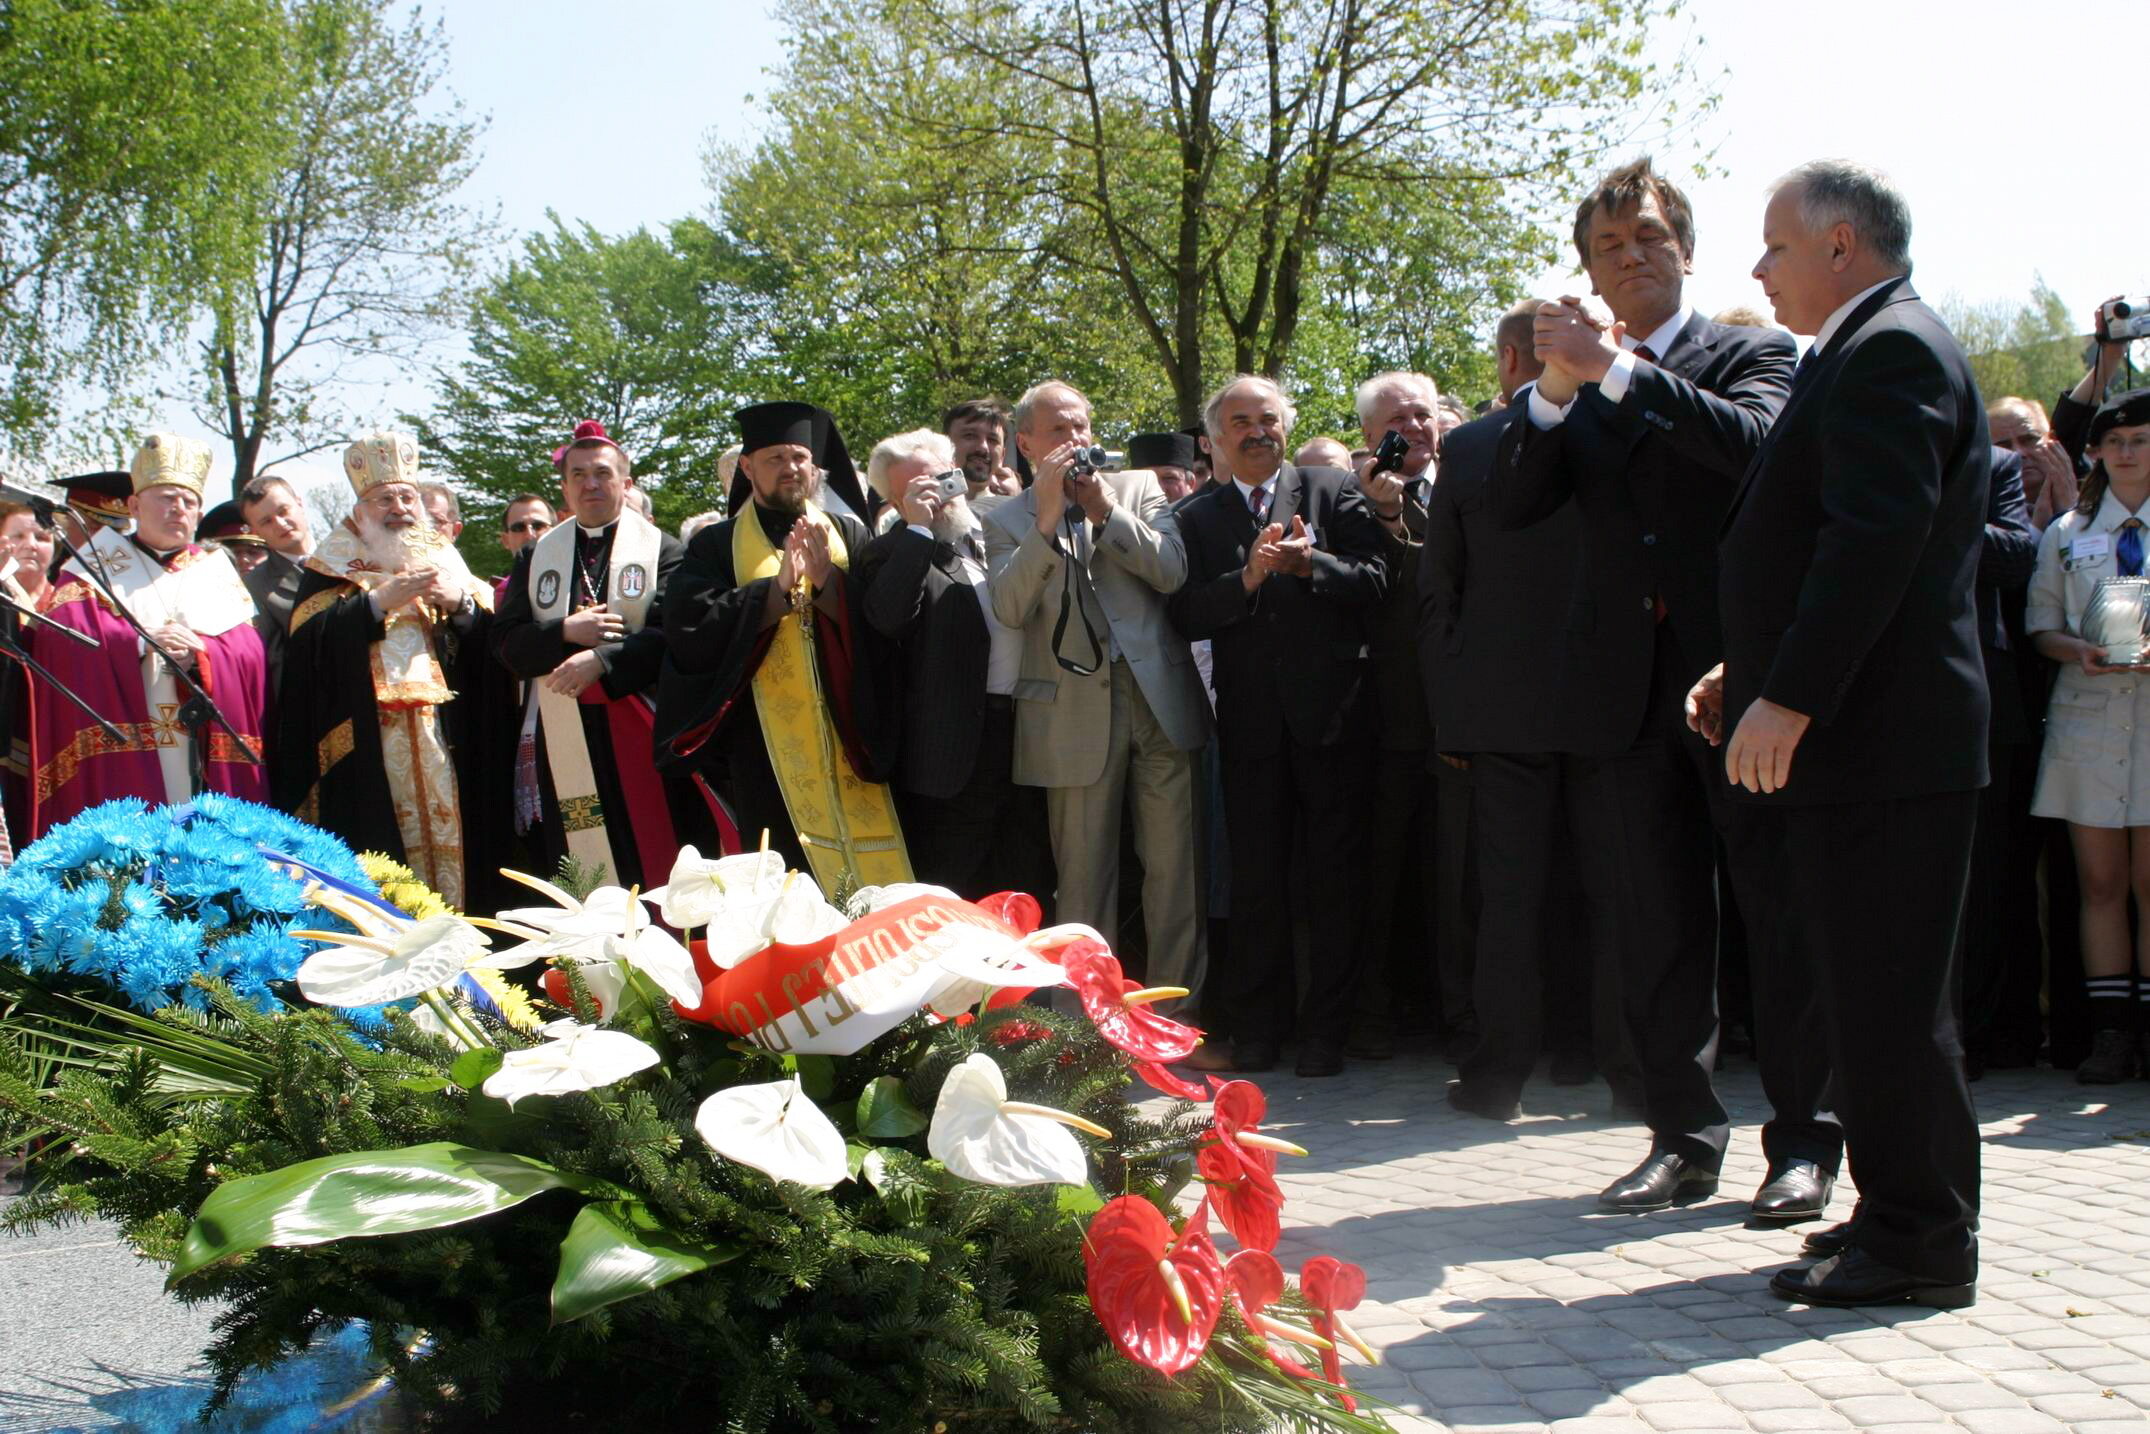 Prezydenci Ukrainy i Polski Wiktor Juszczenko (L) i Lech Kaczyński (P) podczas uroczystości na cmentarzu w Pawłokomie, 2006 r.